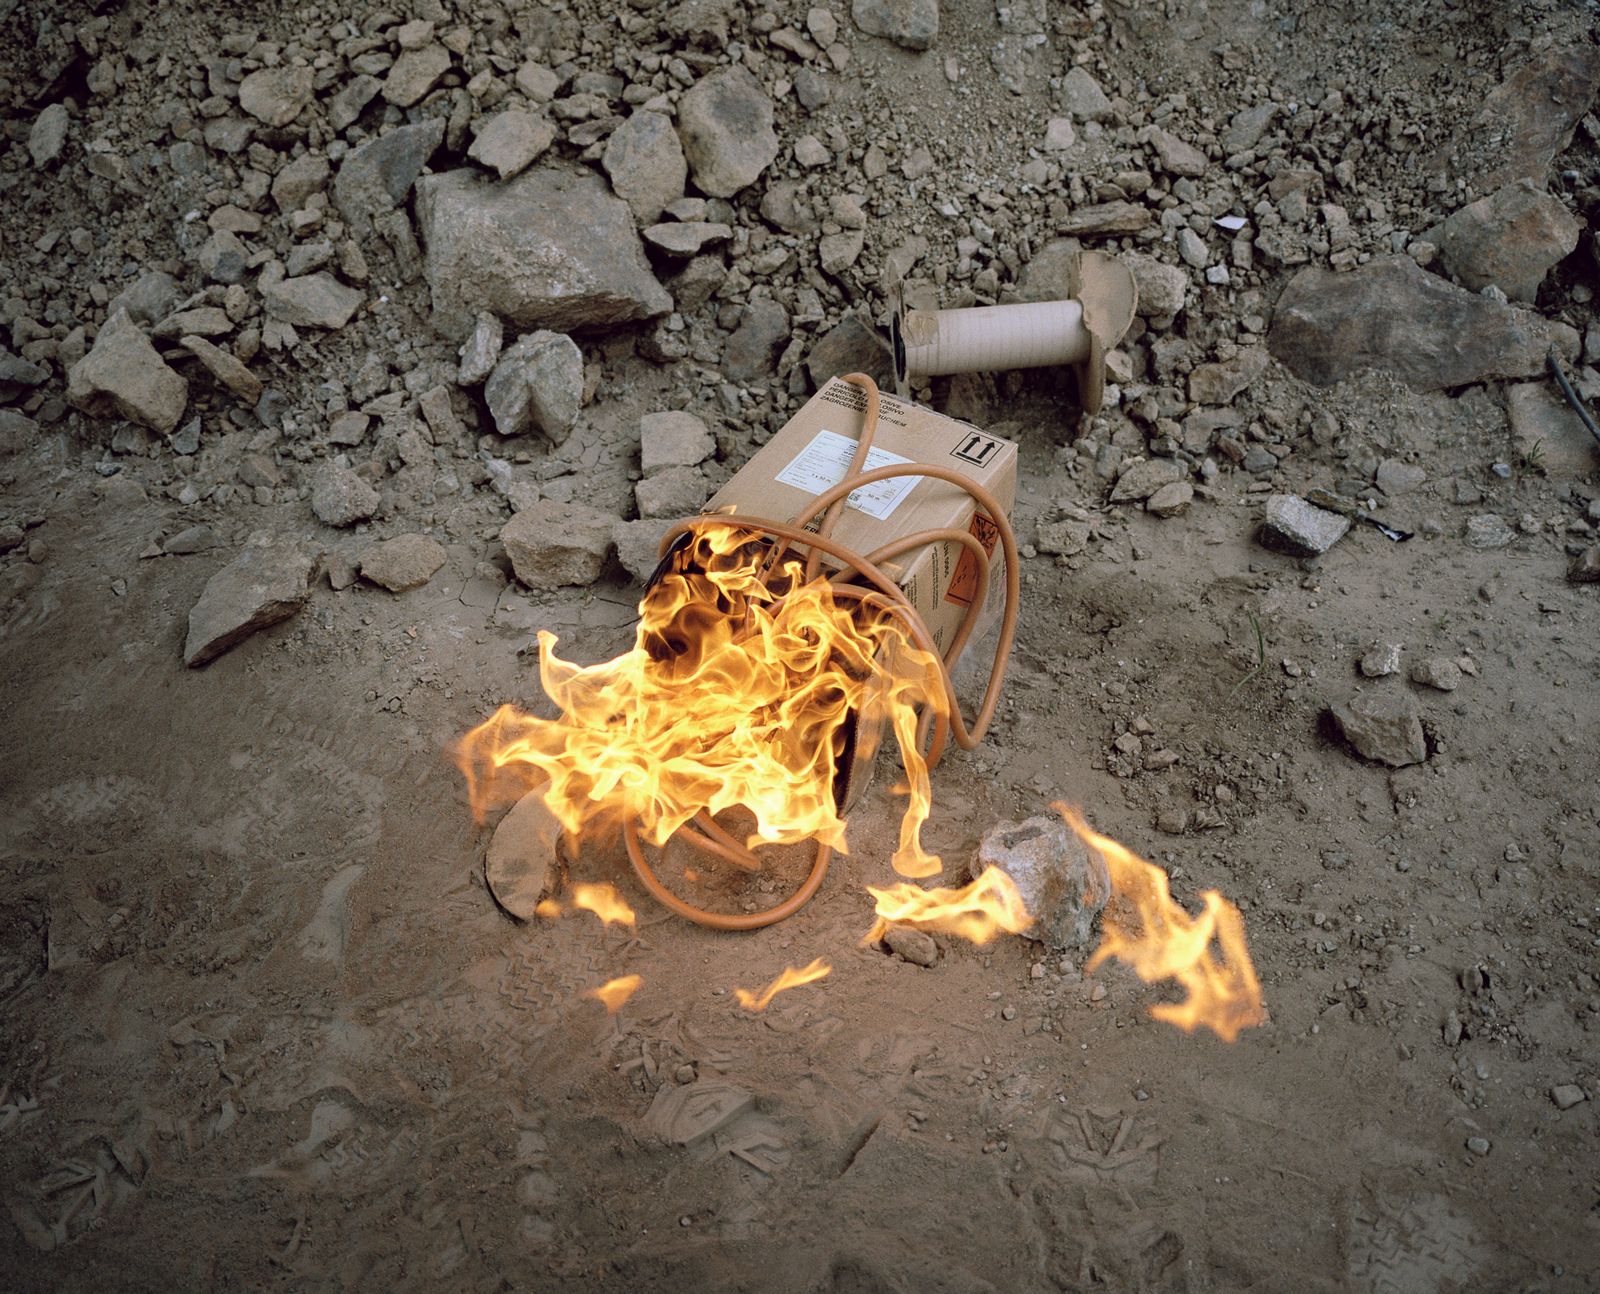 © Filippo Menichetti Martin Errichiello - Leftovers of a detonating cord are burned after a controlled demolition.